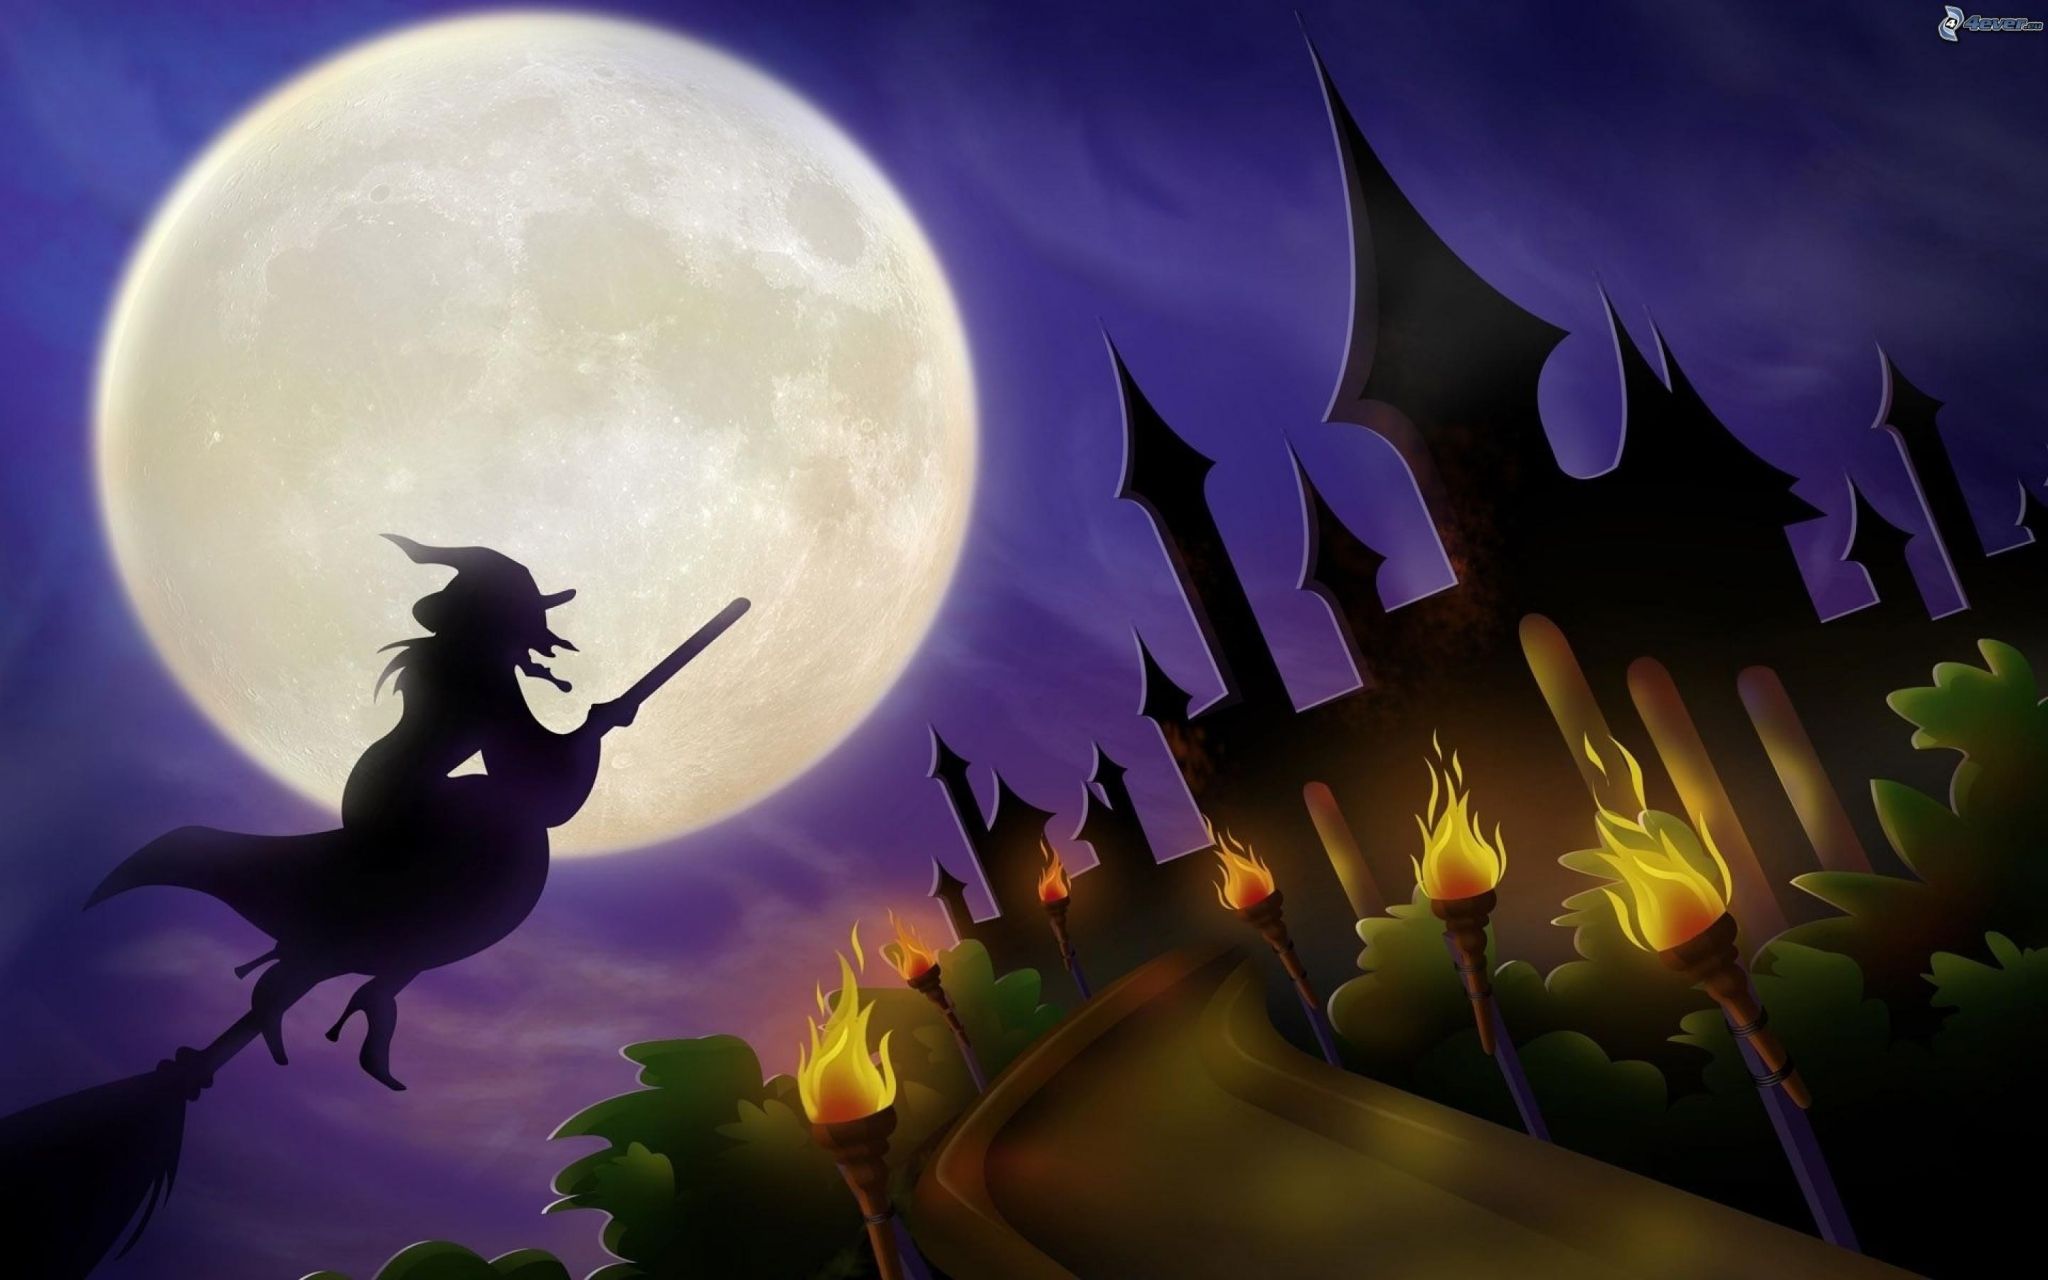 halloween high resolution desktop background. Halloween desktop wallpaper, Halloween wallpaper, Halloween background